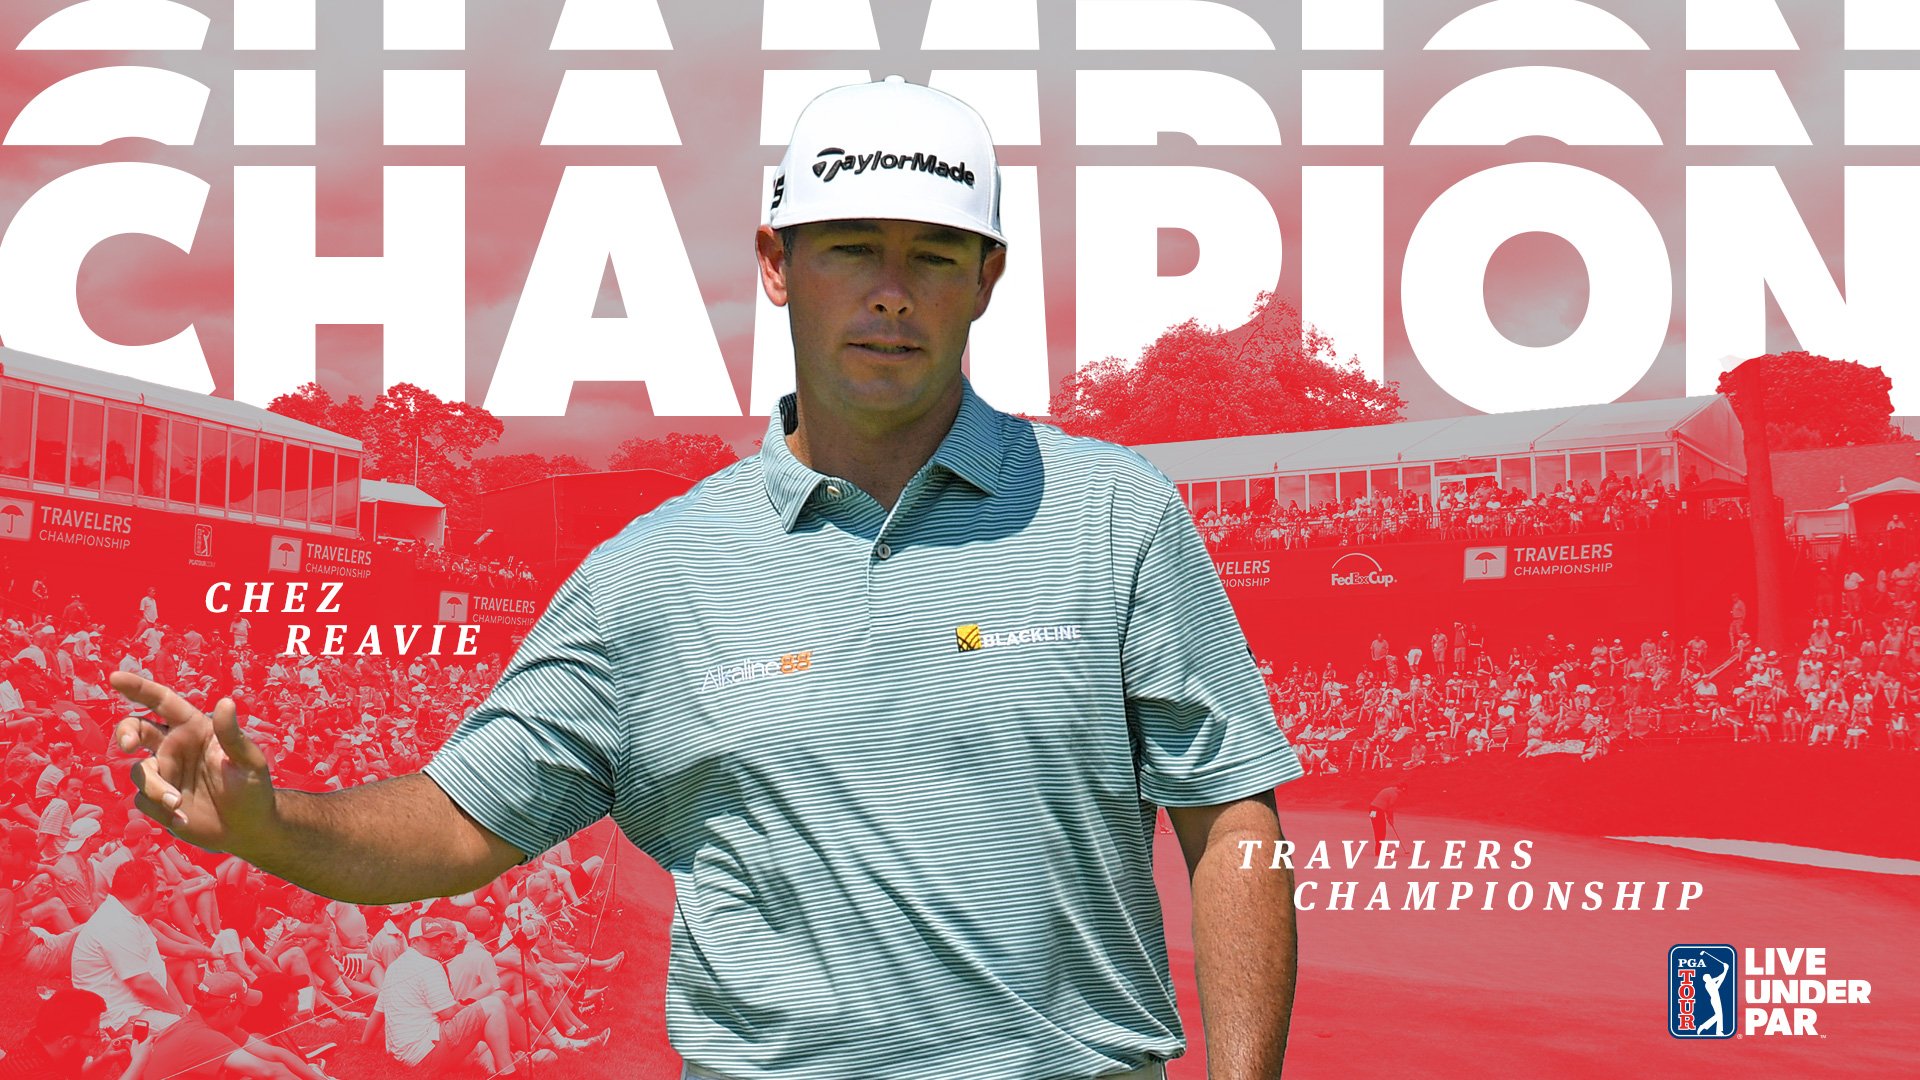 Vô địch Travelers Championship, Chez Reavie giành danh hiệu PGA Tour thứ hai sau gần 11 năm